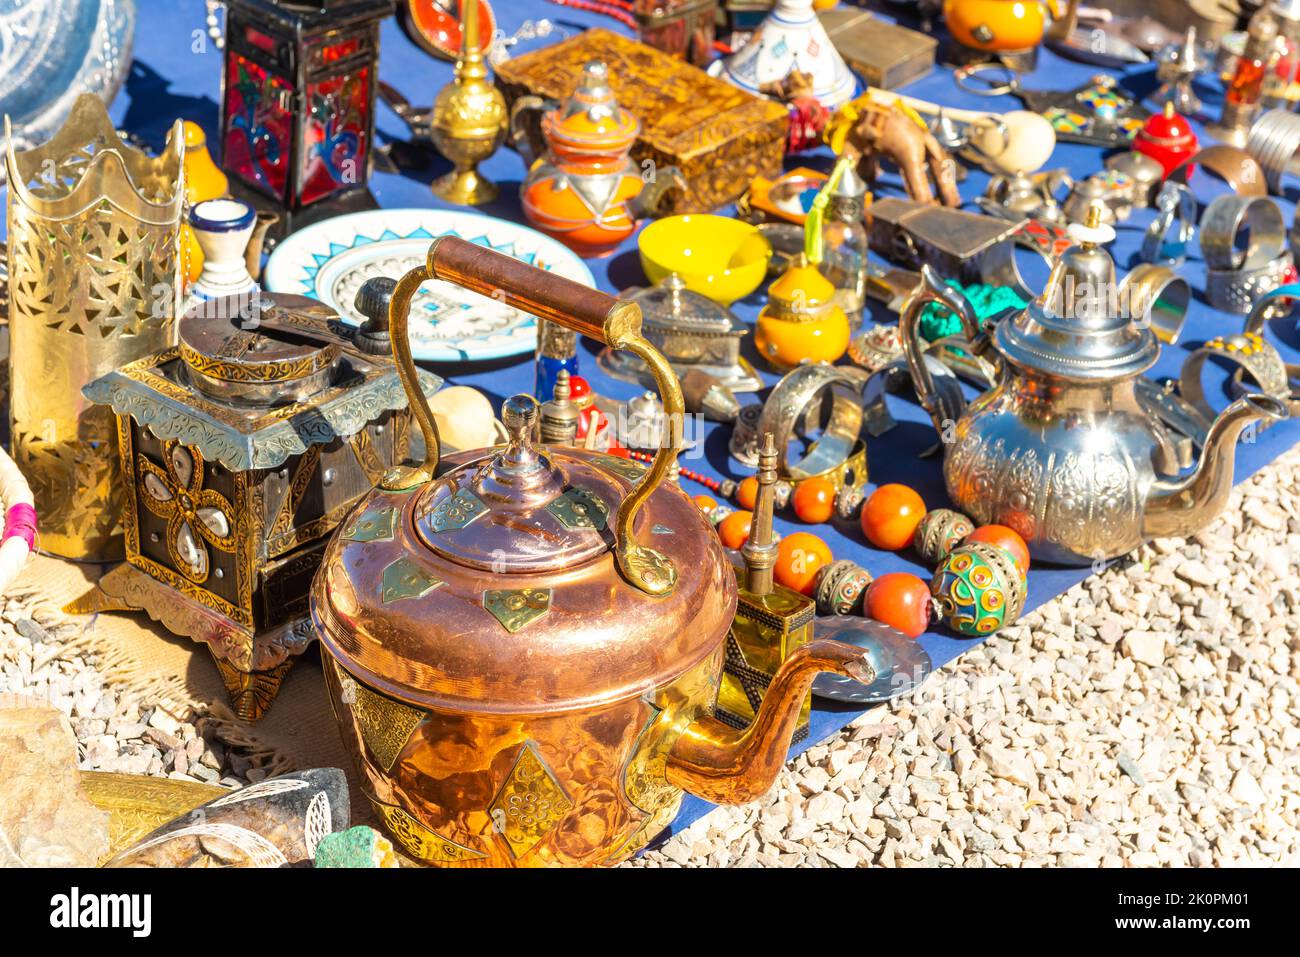 Souvenirs artesanales marroquíes multicolor en el mercado. Teteras y platos, decoraciones, tagines, baratijas Foto de stock